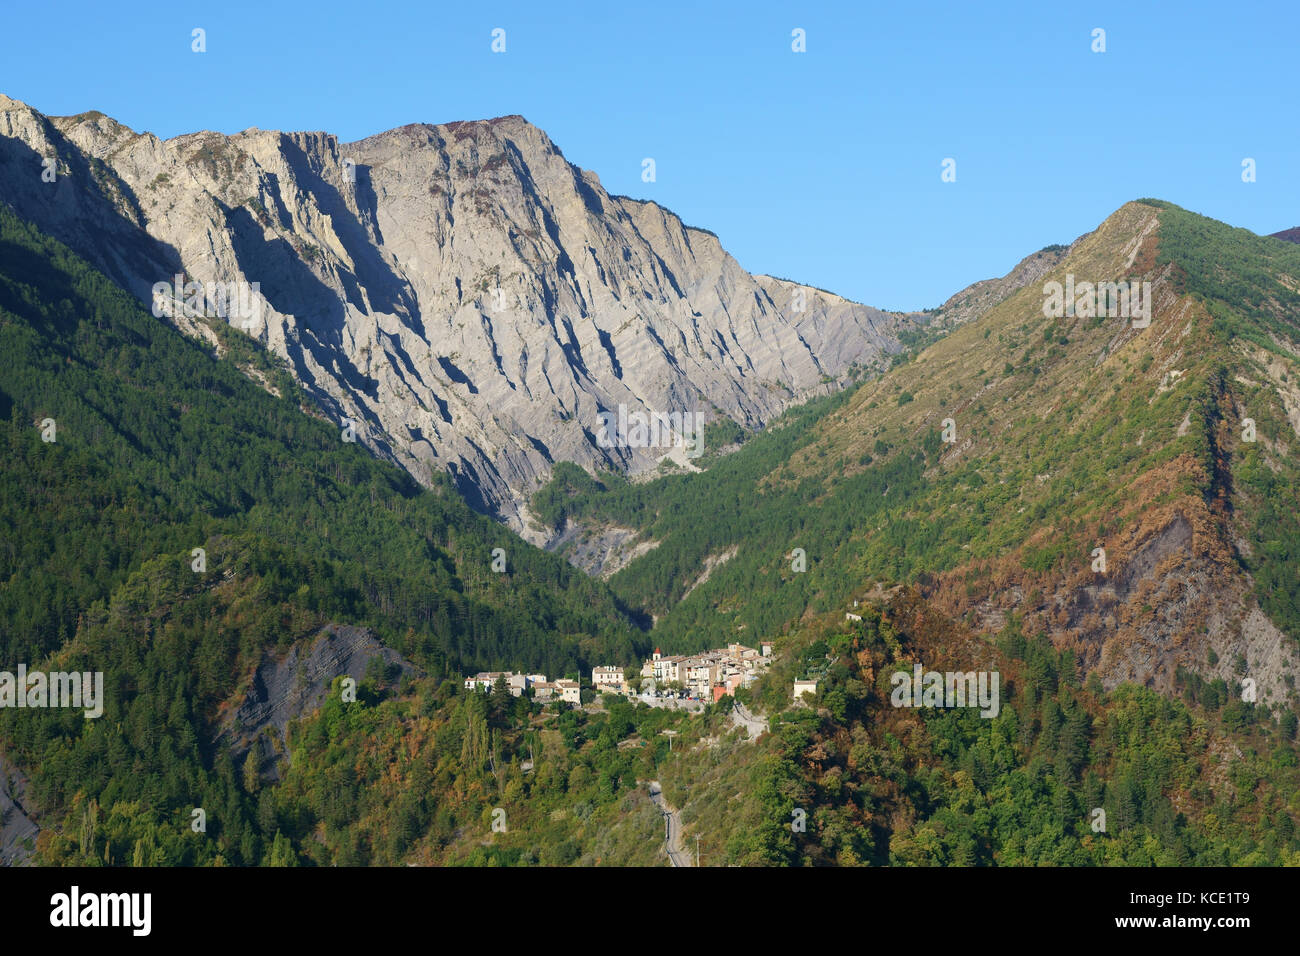 Villaggio senza pretese in un paesaggio grandioso, Montagne de Mairola (altitudine: 1596m asl) sullo sfondo. Rigaud, Alpi Marittime, Francia. Foto Stock